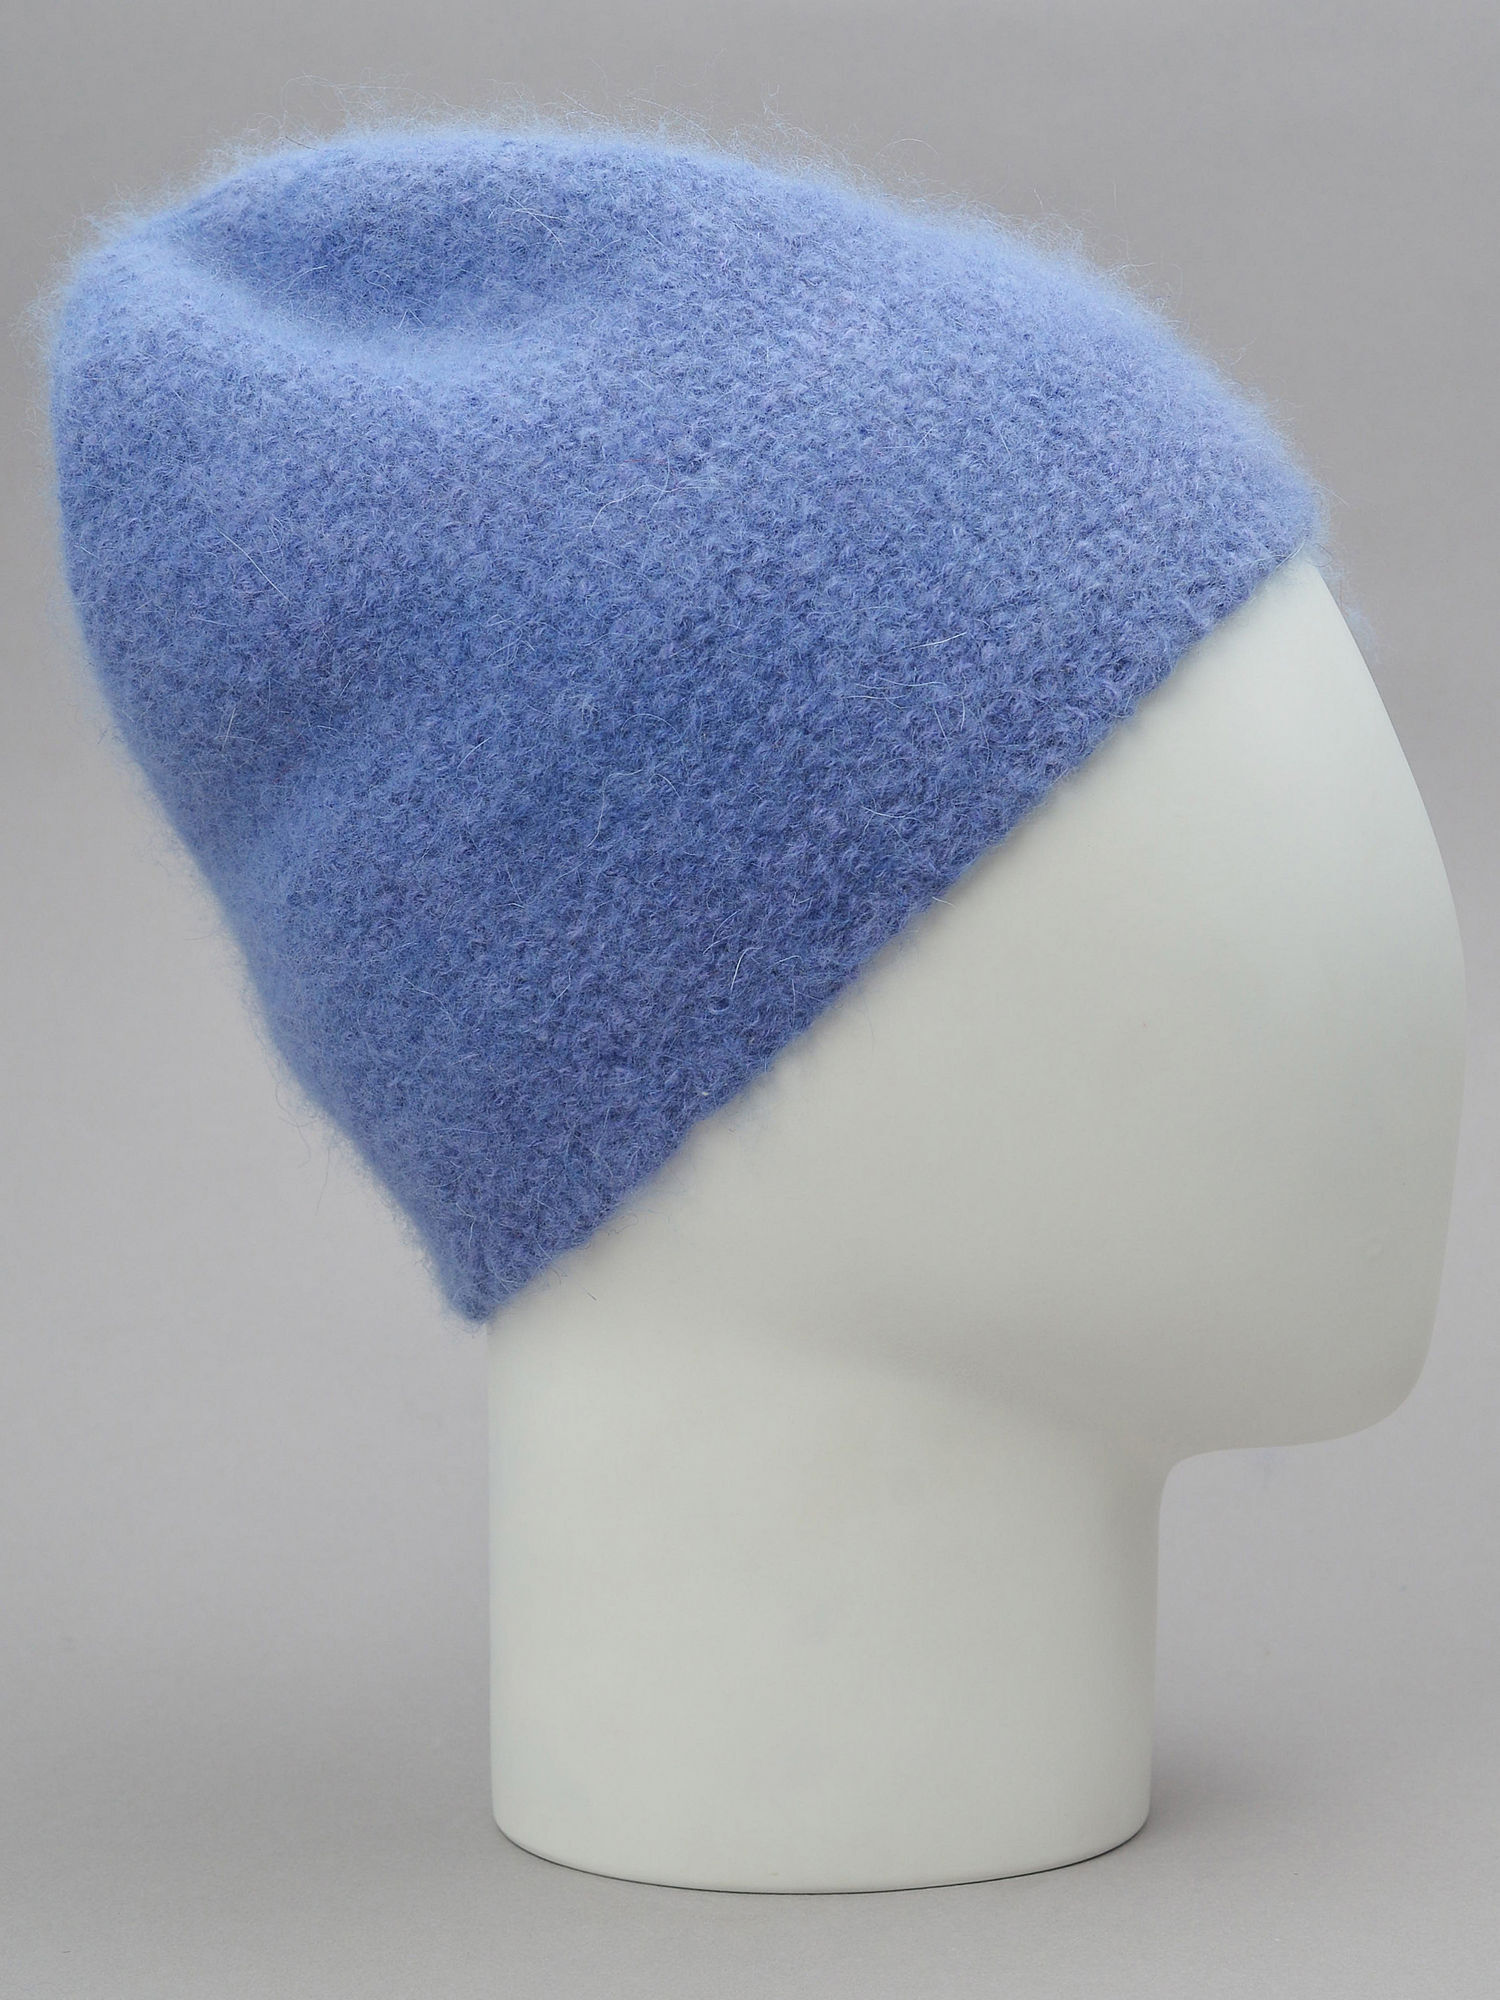 Шапка бини женская из ангоры голубой цвет вязаная женская шерсть пушистая на манекене головы